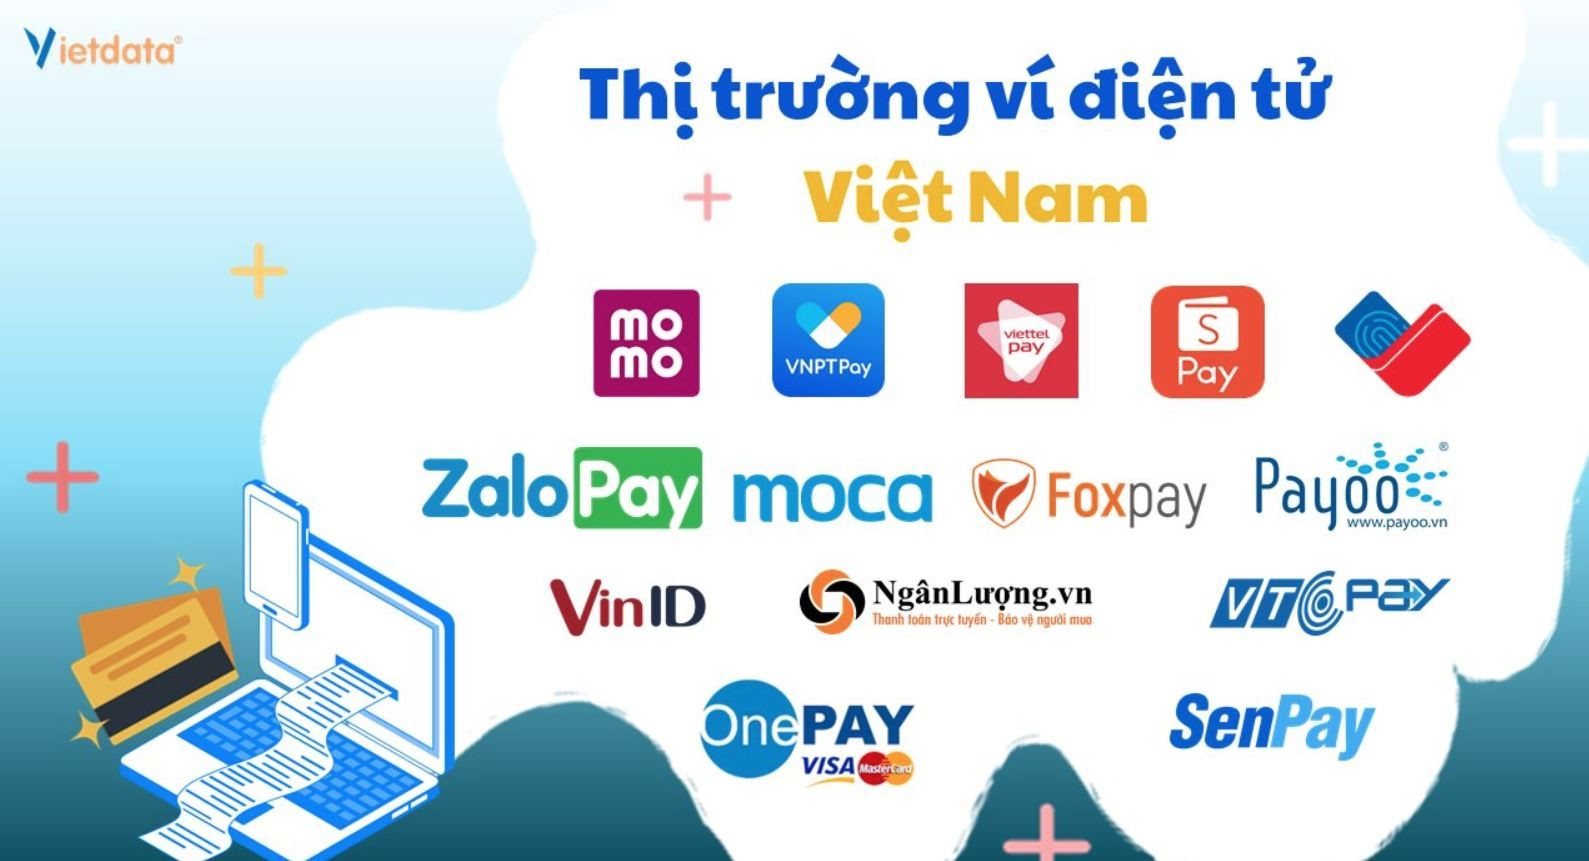 Nhộn nhịp và khốc liệt như thị trường ví điện tử Việt